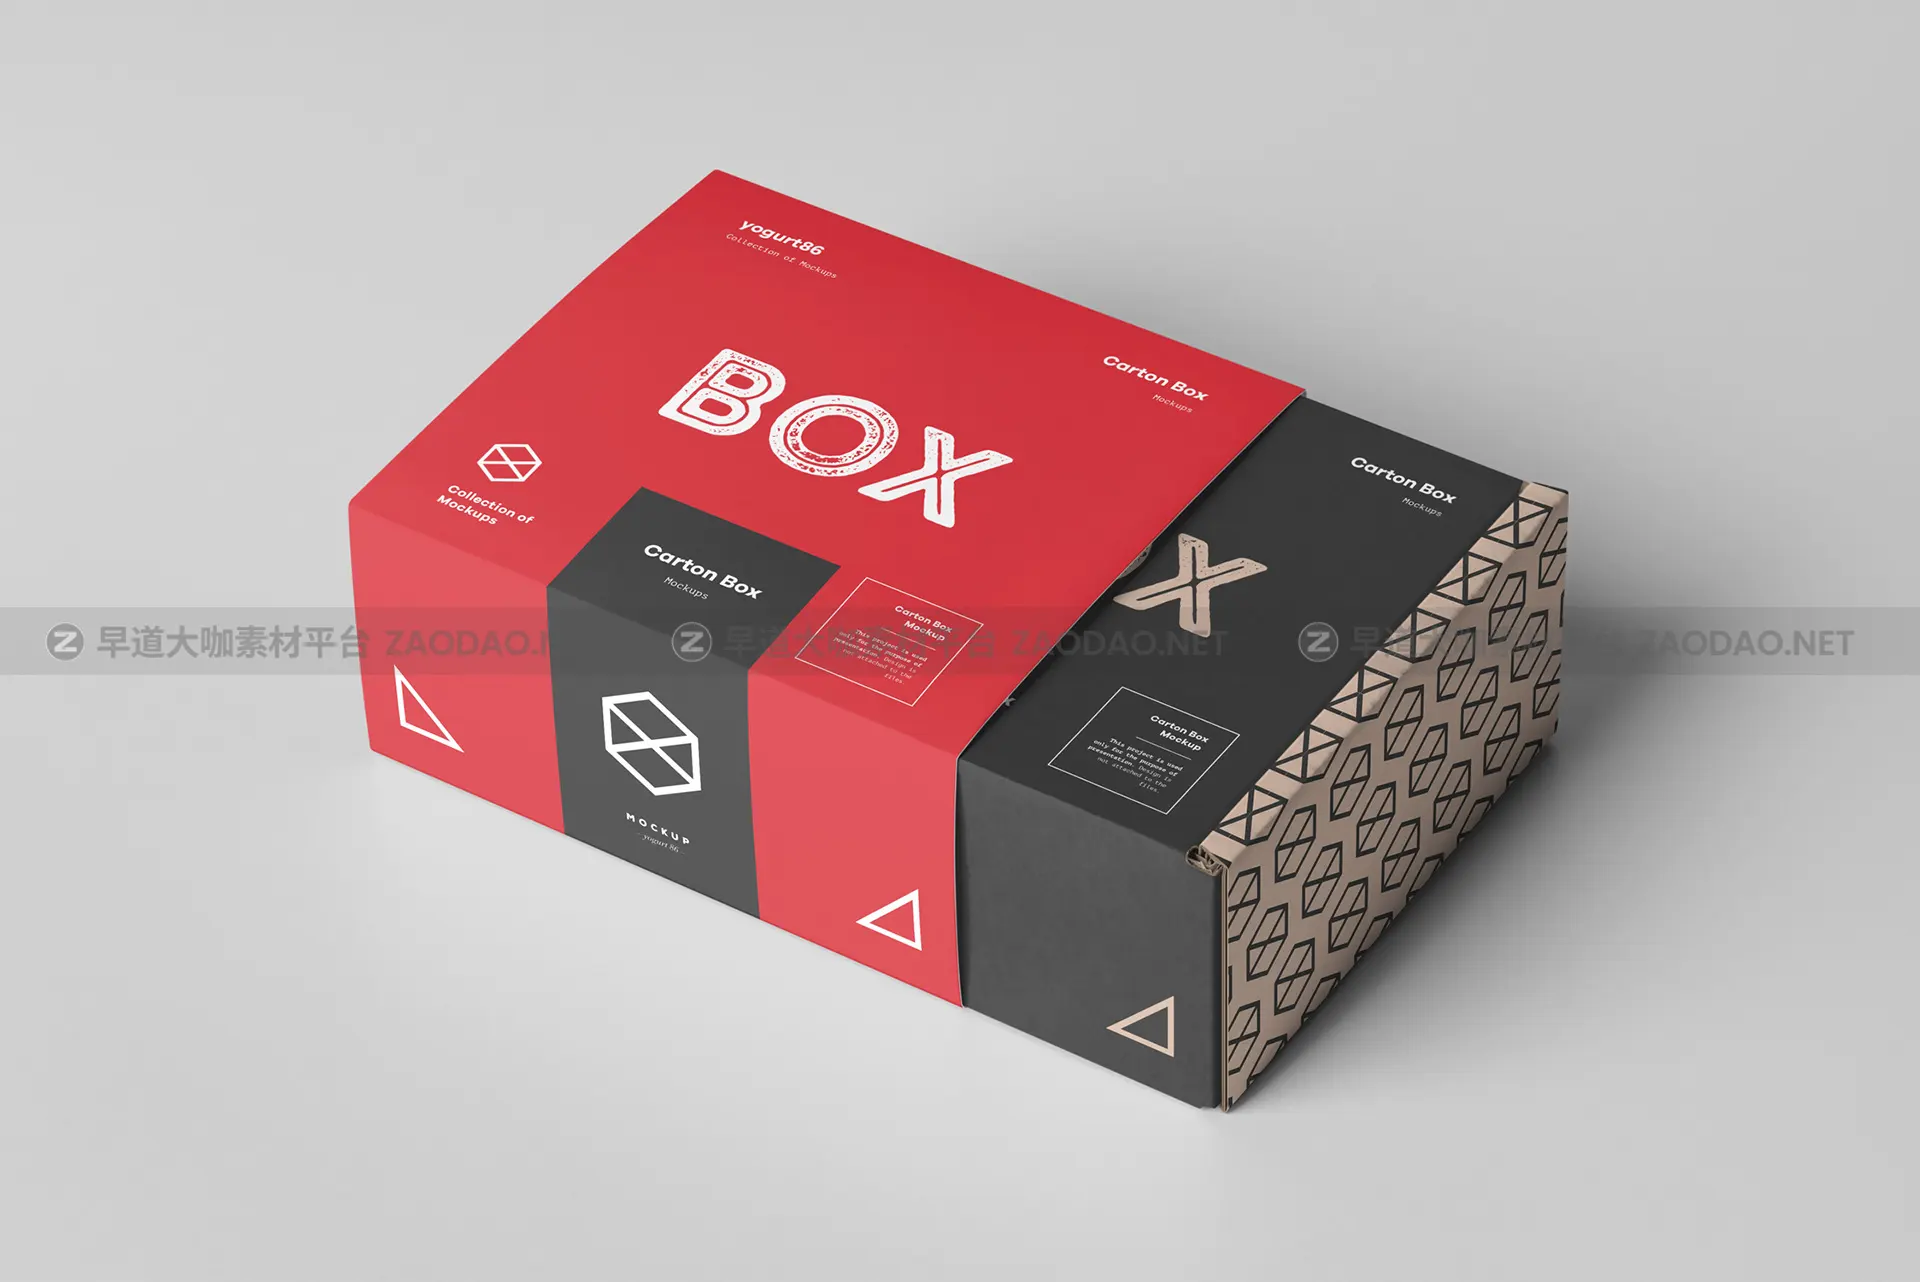 瓦楞纸产品包装纸箱设计展示样机模板 Carton Box Mockup 95x85x42插图2